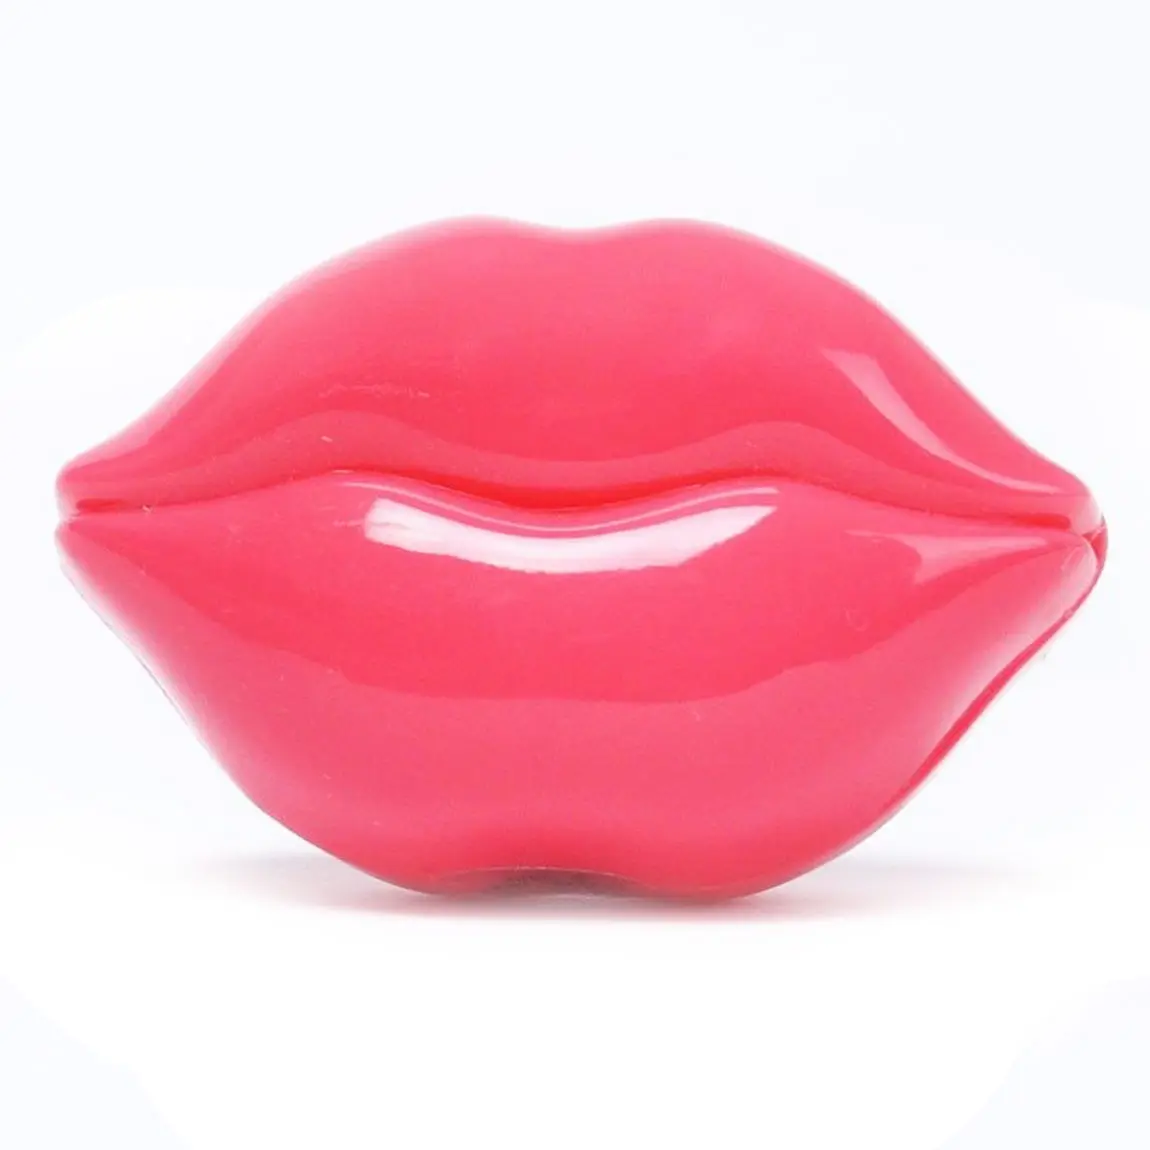 TONYMOLY Kiss, бальзам для губ, скраб для губ, 1 шт., ремонт увлажнителя, бальзам для губ, отшелушивающий скраб, отмершая кожа, корейская косметика - Цвет: Lip Scrub